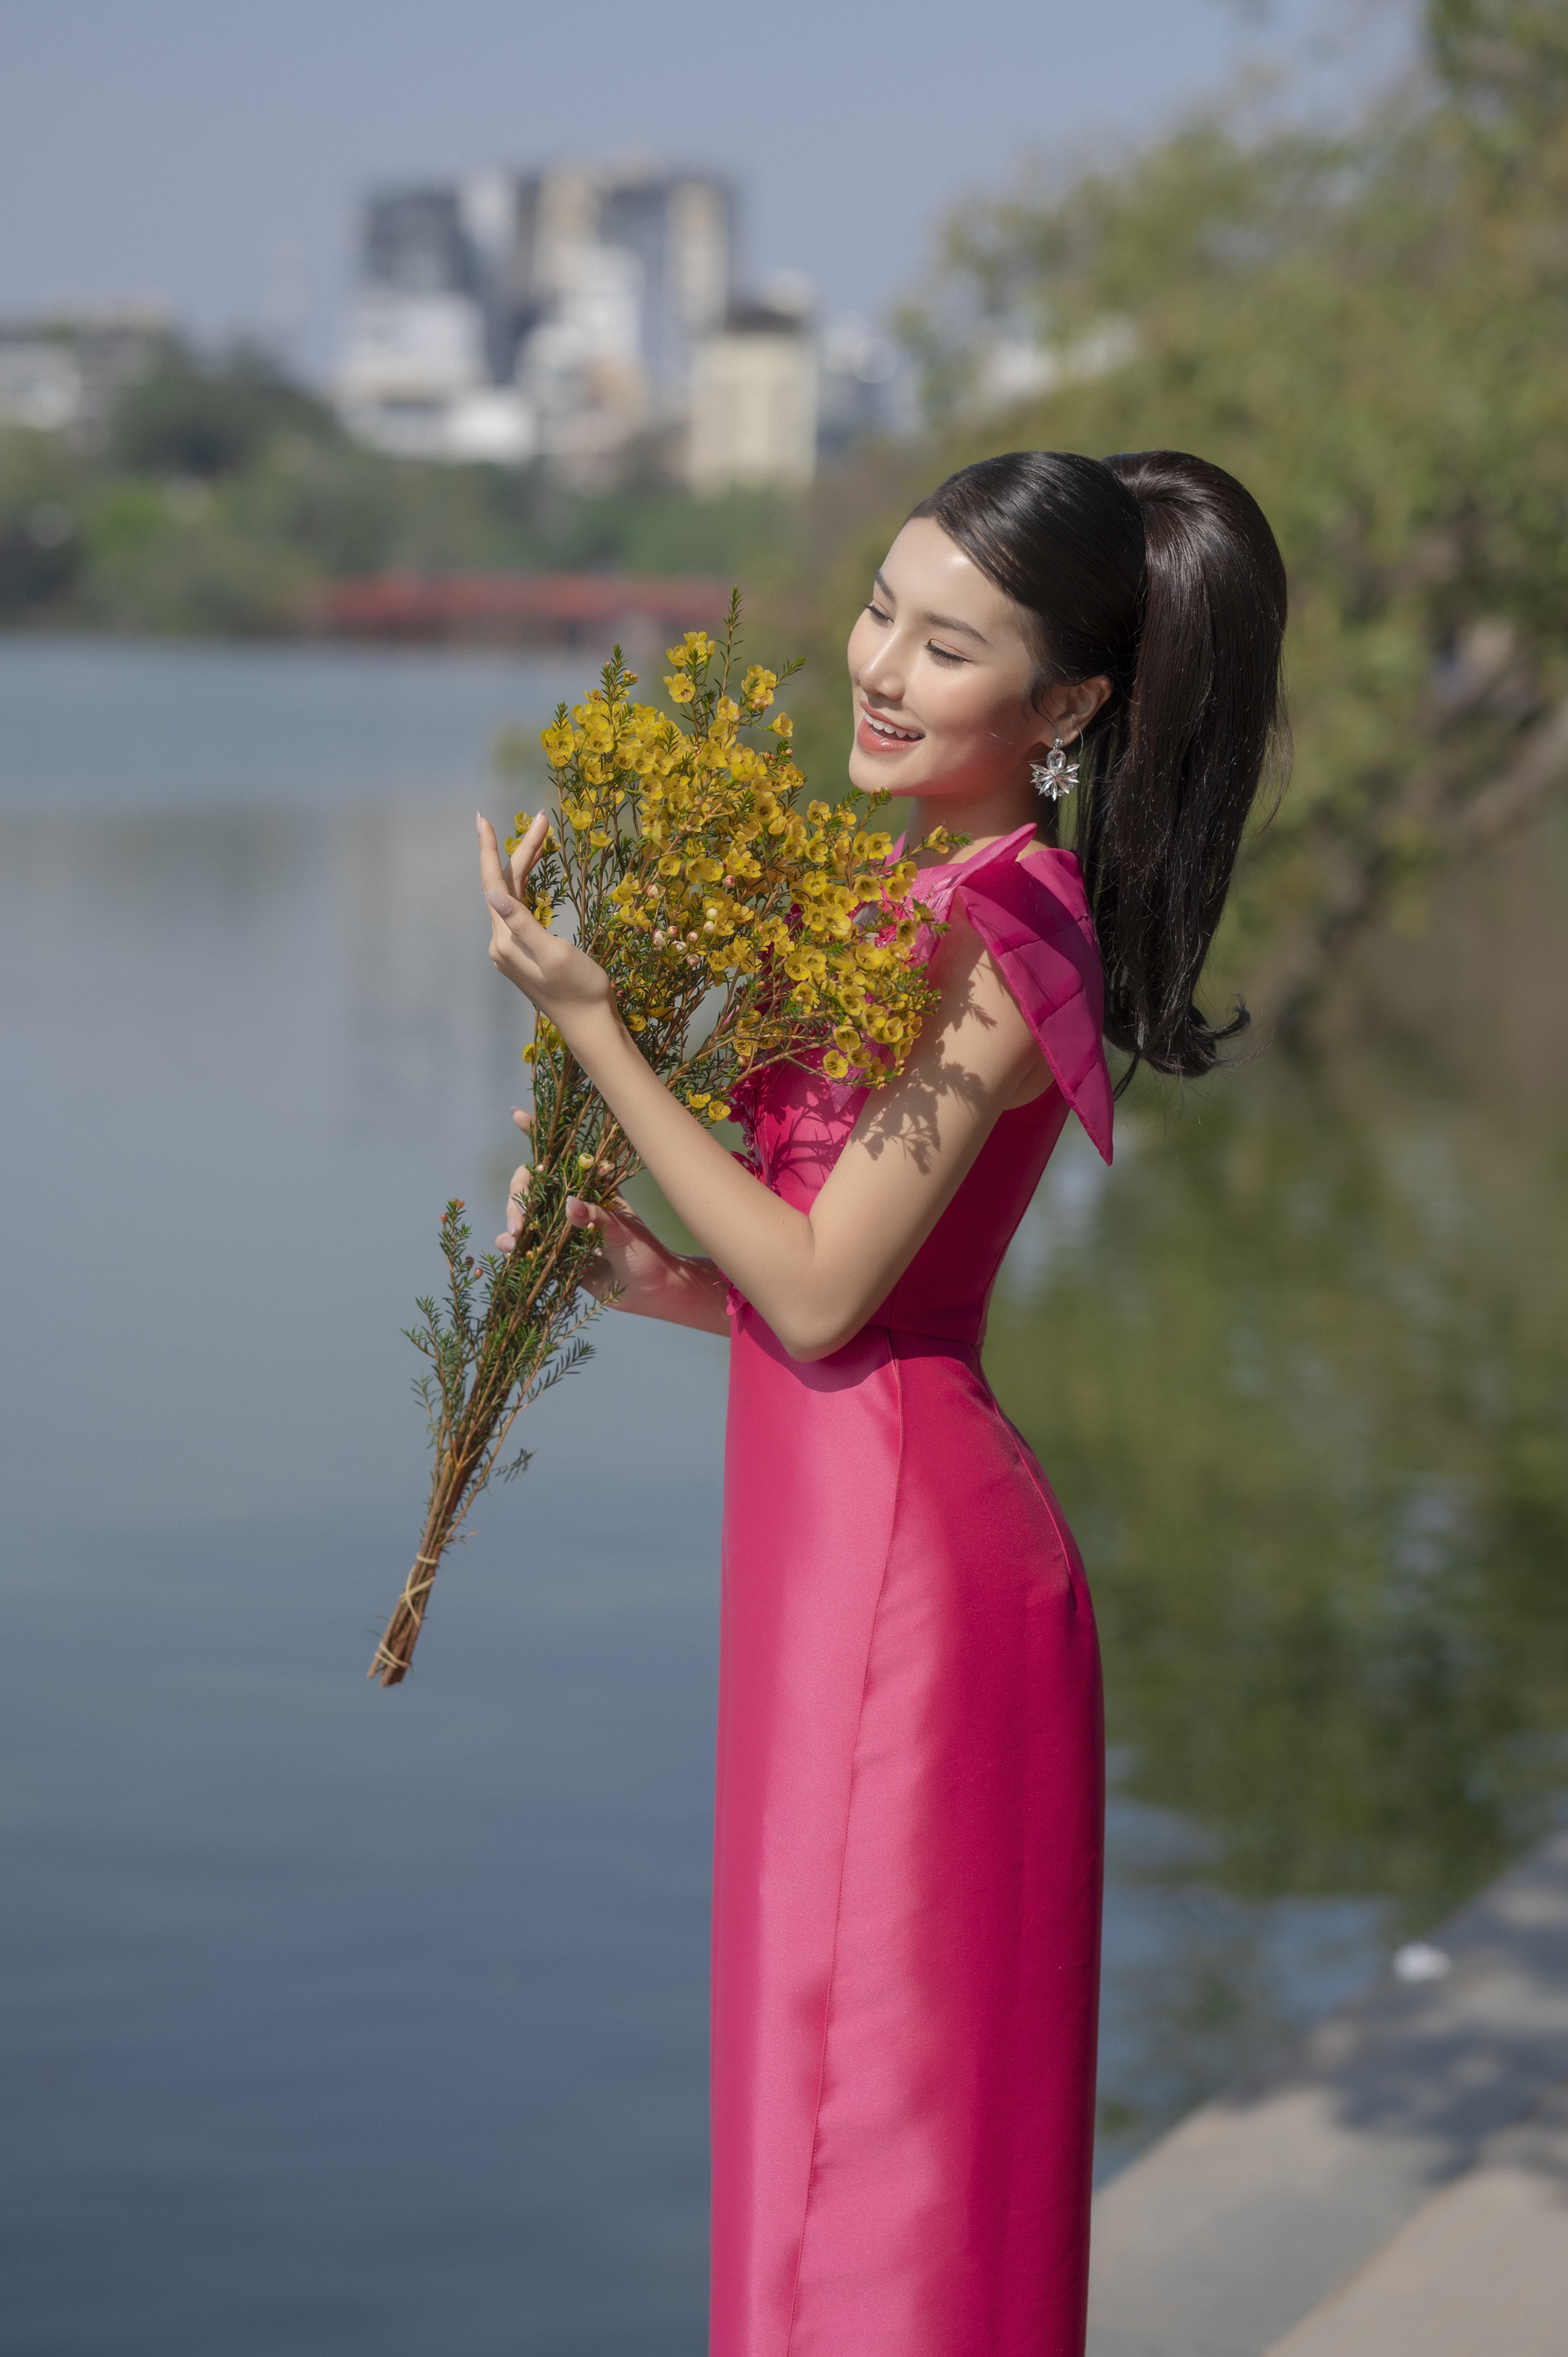 Á hậu Hương Ly khoe nhan sắc ngọt ngào trong những thiết kế áo dài đậm chất xuân - Ảnh 3.